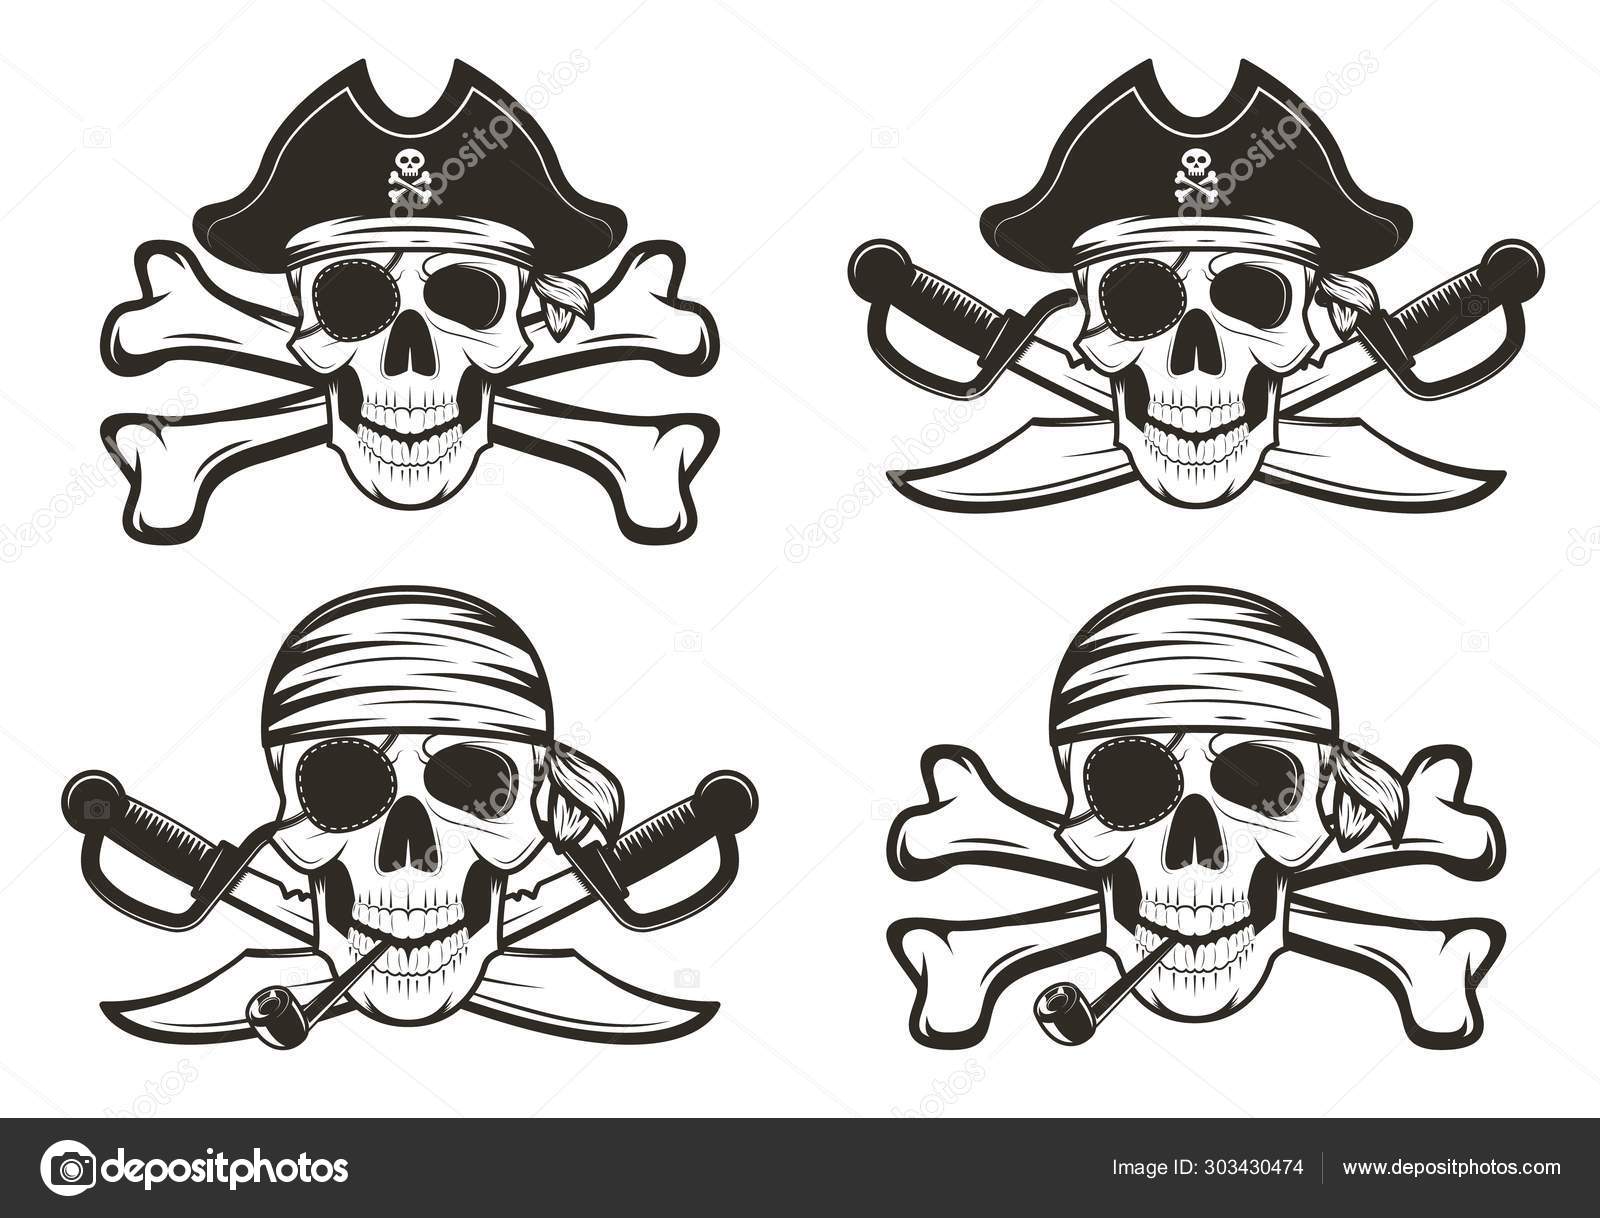 Piratas do crânio com ilustração de espada